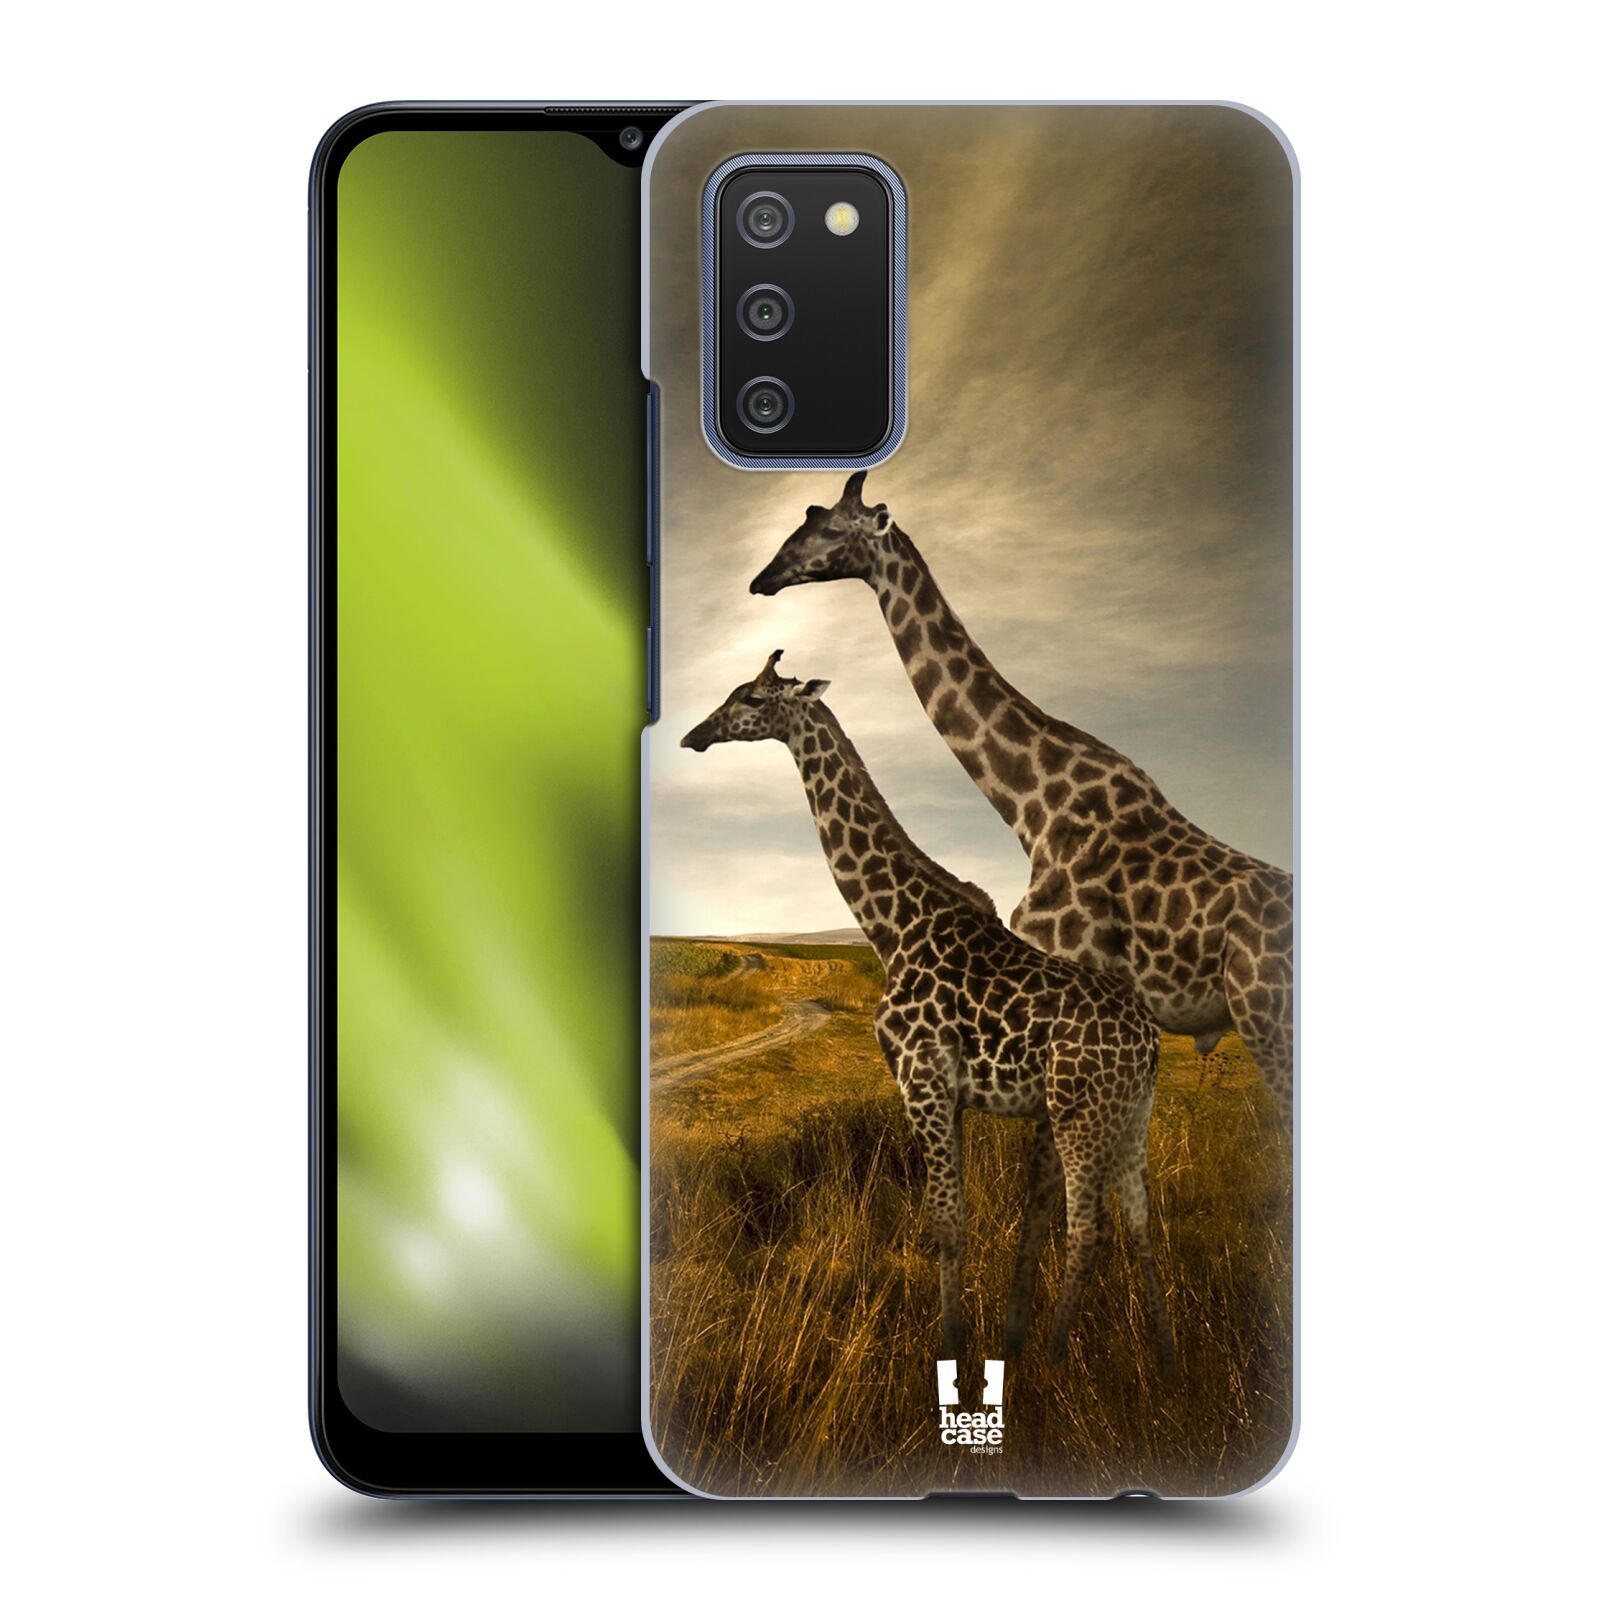 Zadní obal pro mobil Samsung Galaxy A02s / A03s - HEAD CASE - Svět zvířat žirafy